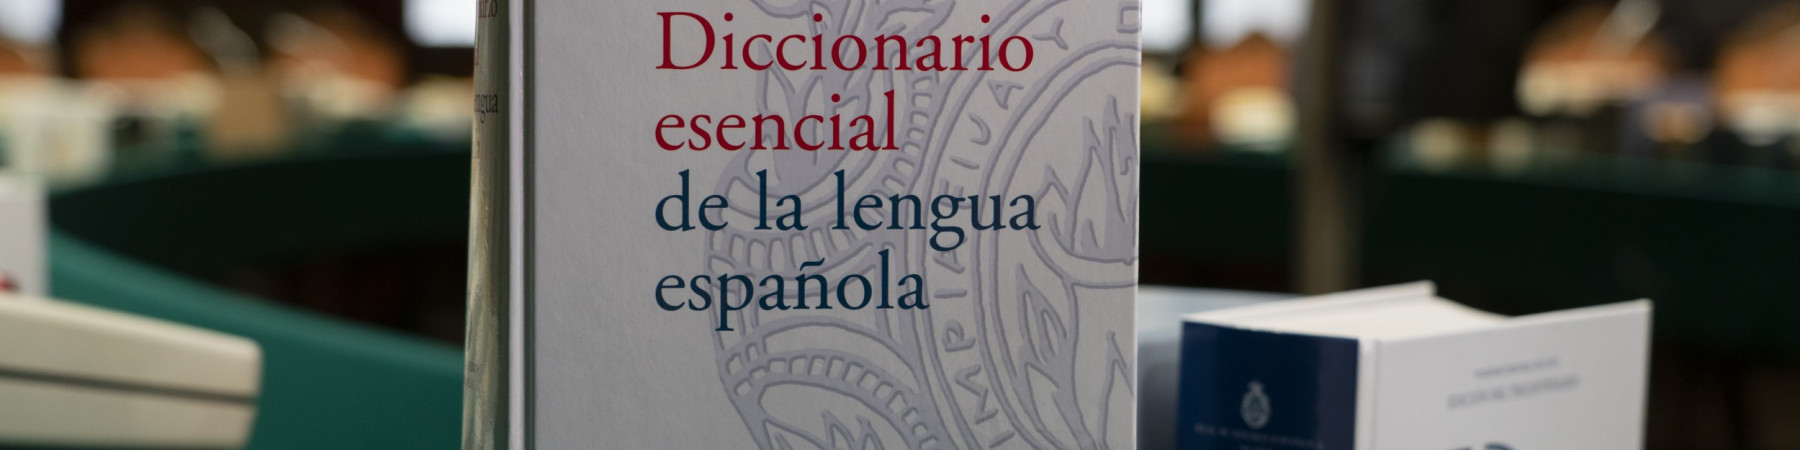 Diccionario esencial de la lengua española